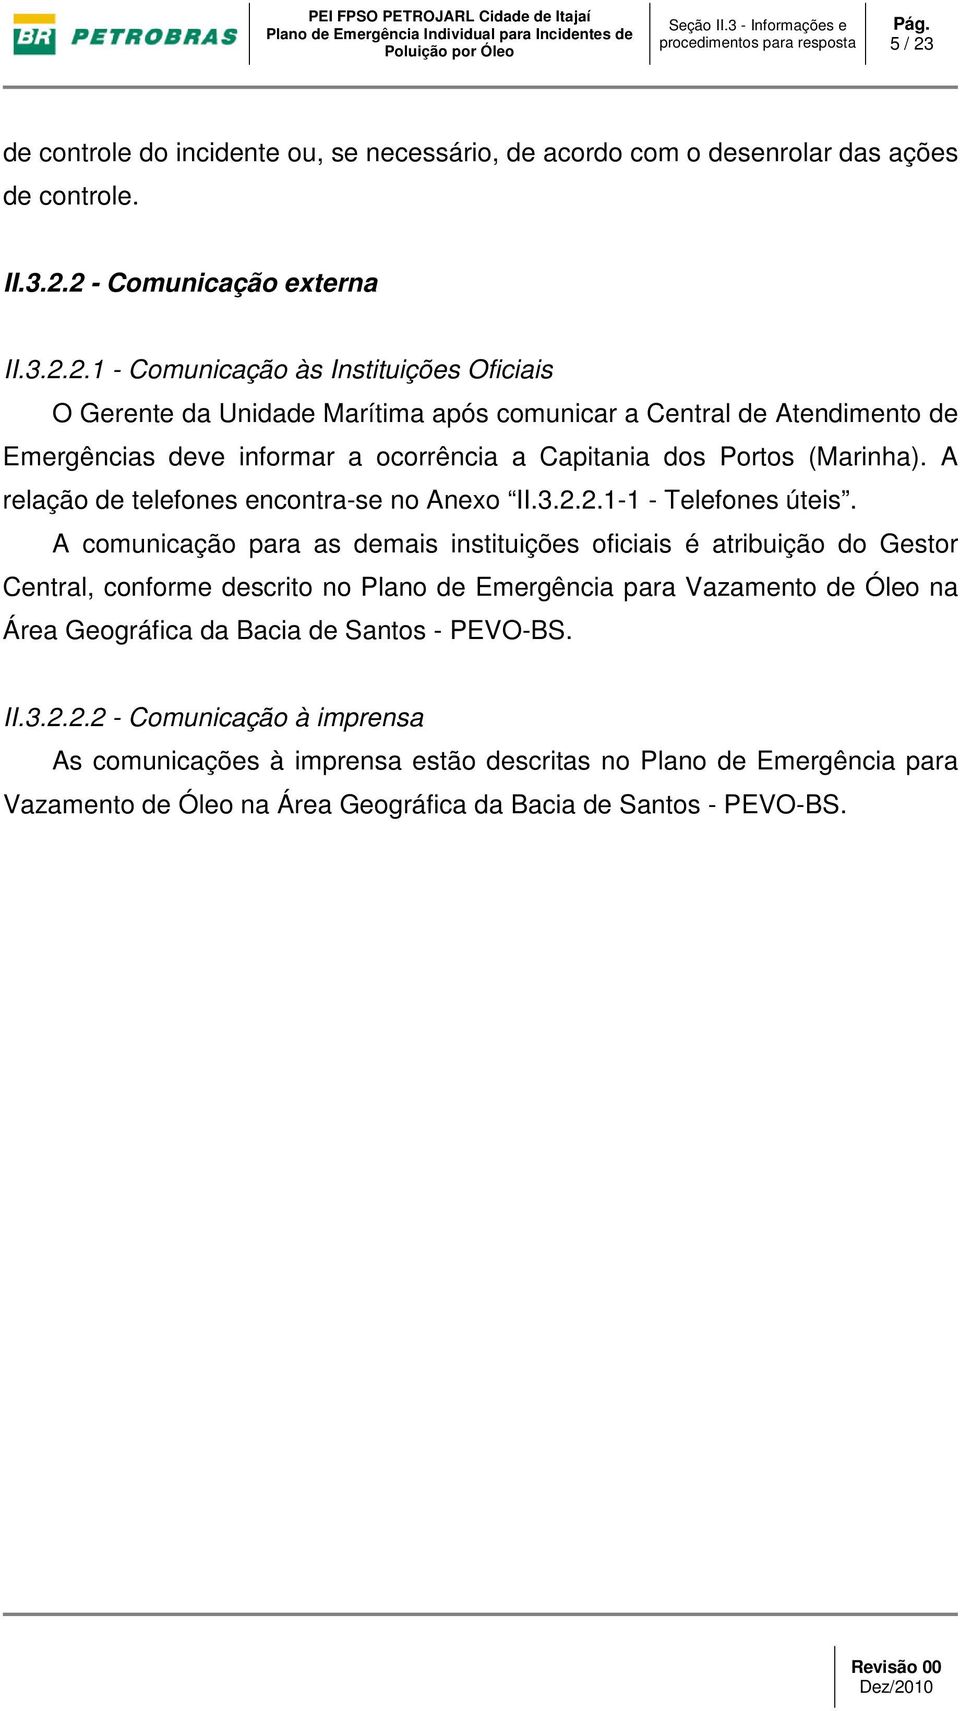 A comunicação para as demais instituições oficiais é atribuição do Gestor Central, conforme descrito no Plano de Emergência para Vazamento de Óleo na Área Geográfica da Bacia de Santos -